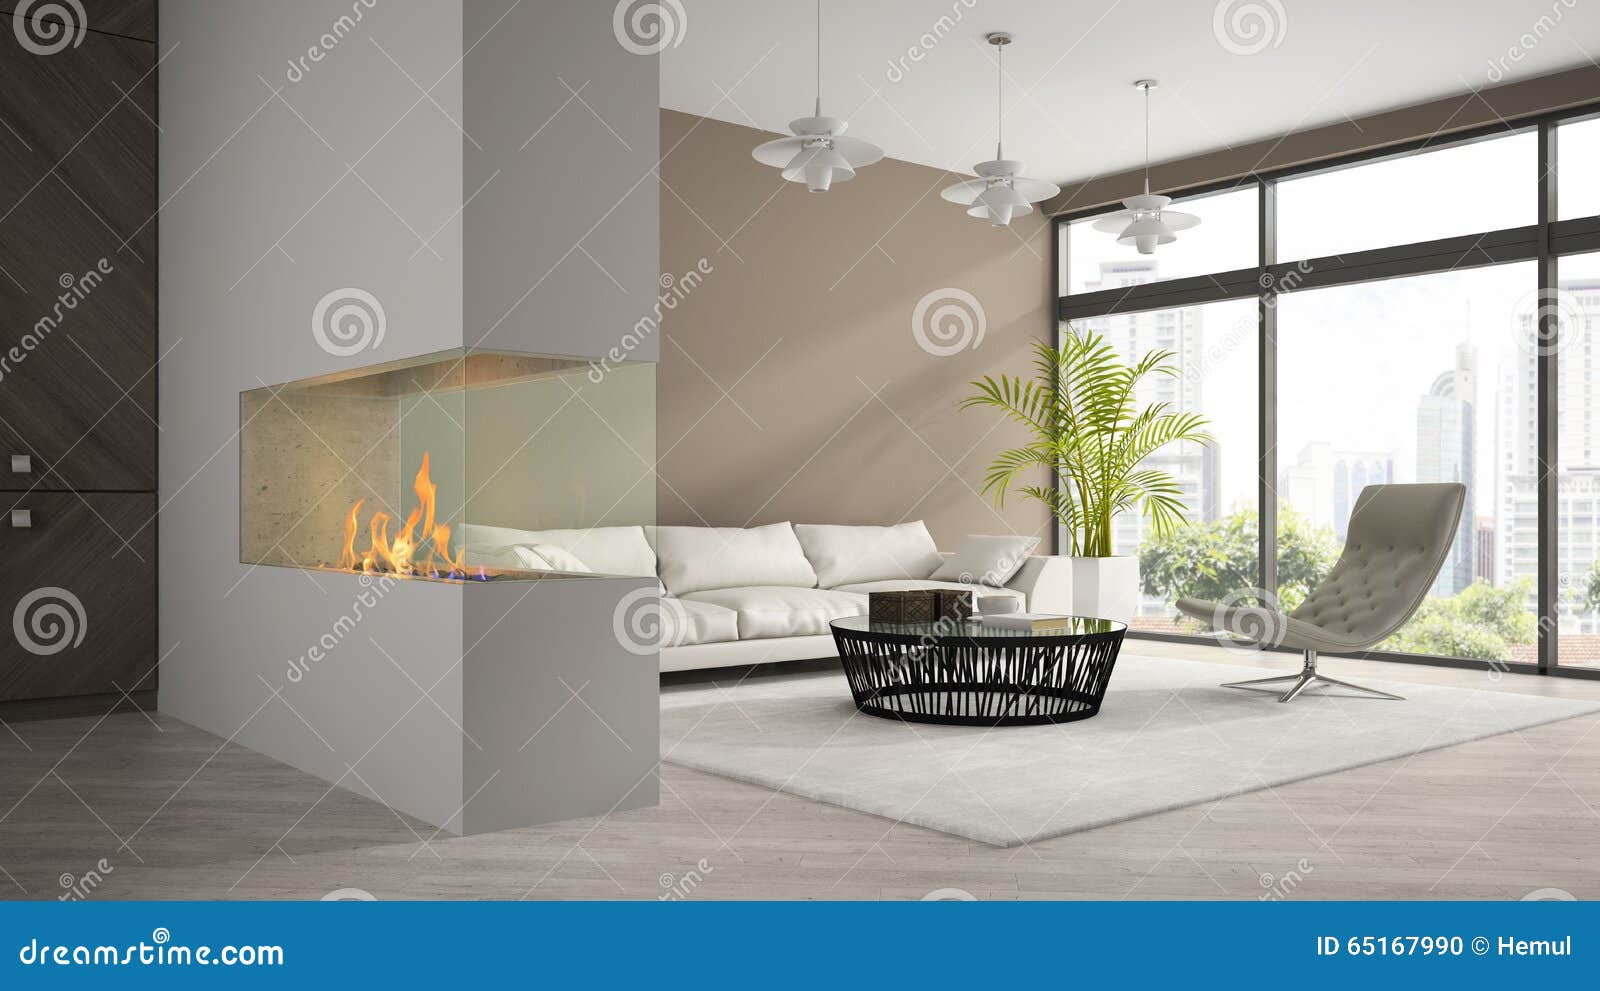 Innenraum Des Modernen Dachbodens Mit Kamin Und Weißes Sofa 3D übertragen  Stock Abbildung - Illustration von raum, küche: 65167990